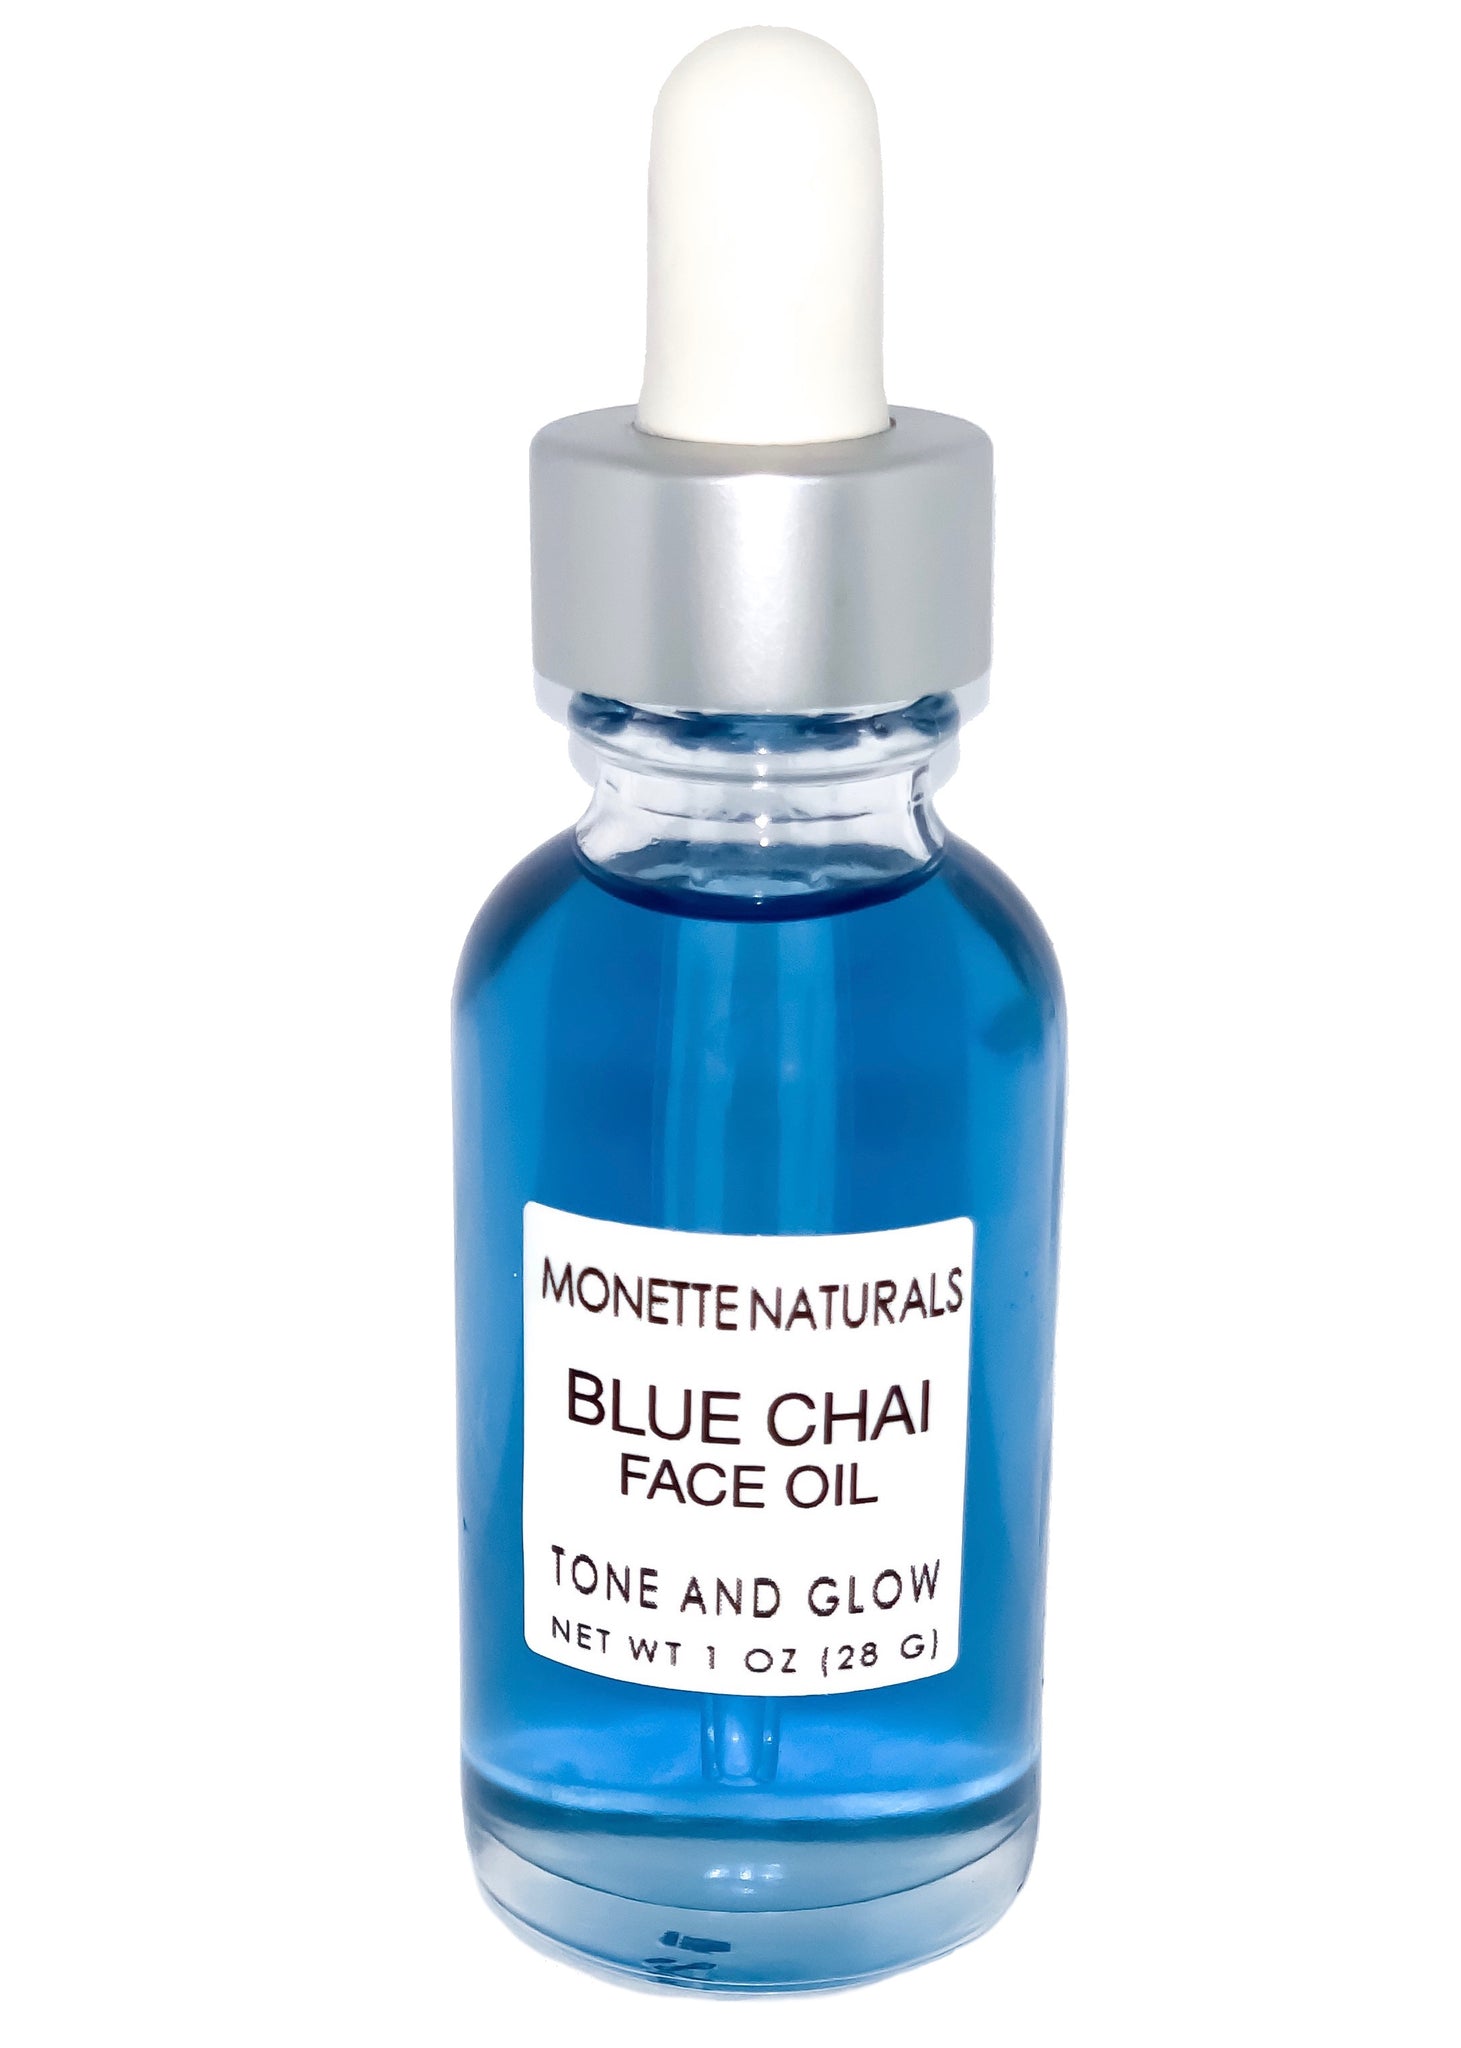 Blue Chai Face Oil